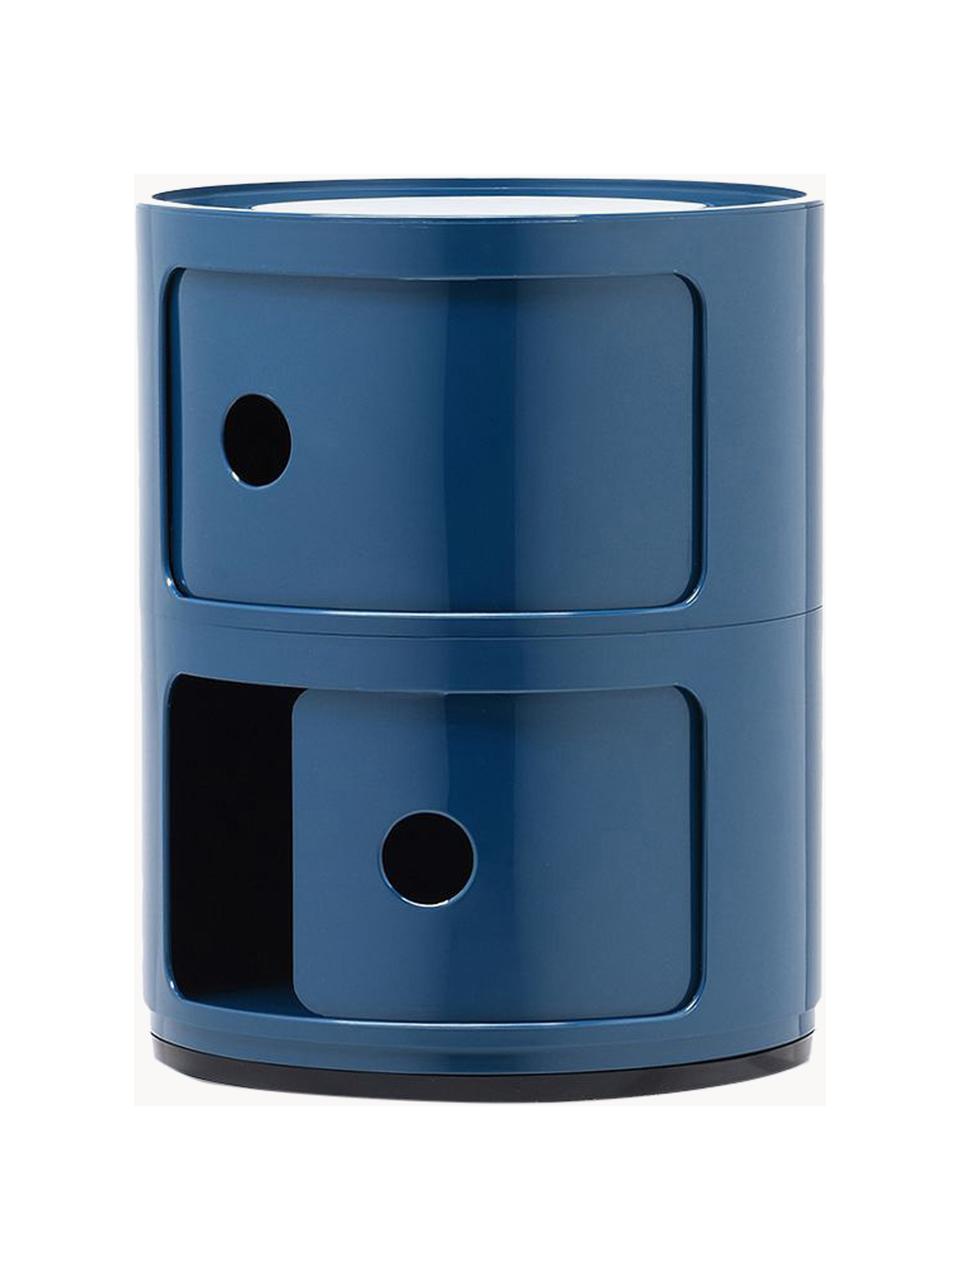 Stolik pomocniczy Componibili, 2 moduły, Tworzywo sztuczne z certyfikatem Greenguard, Niebieski, błyszczący, Ø 32 x W 40 cm